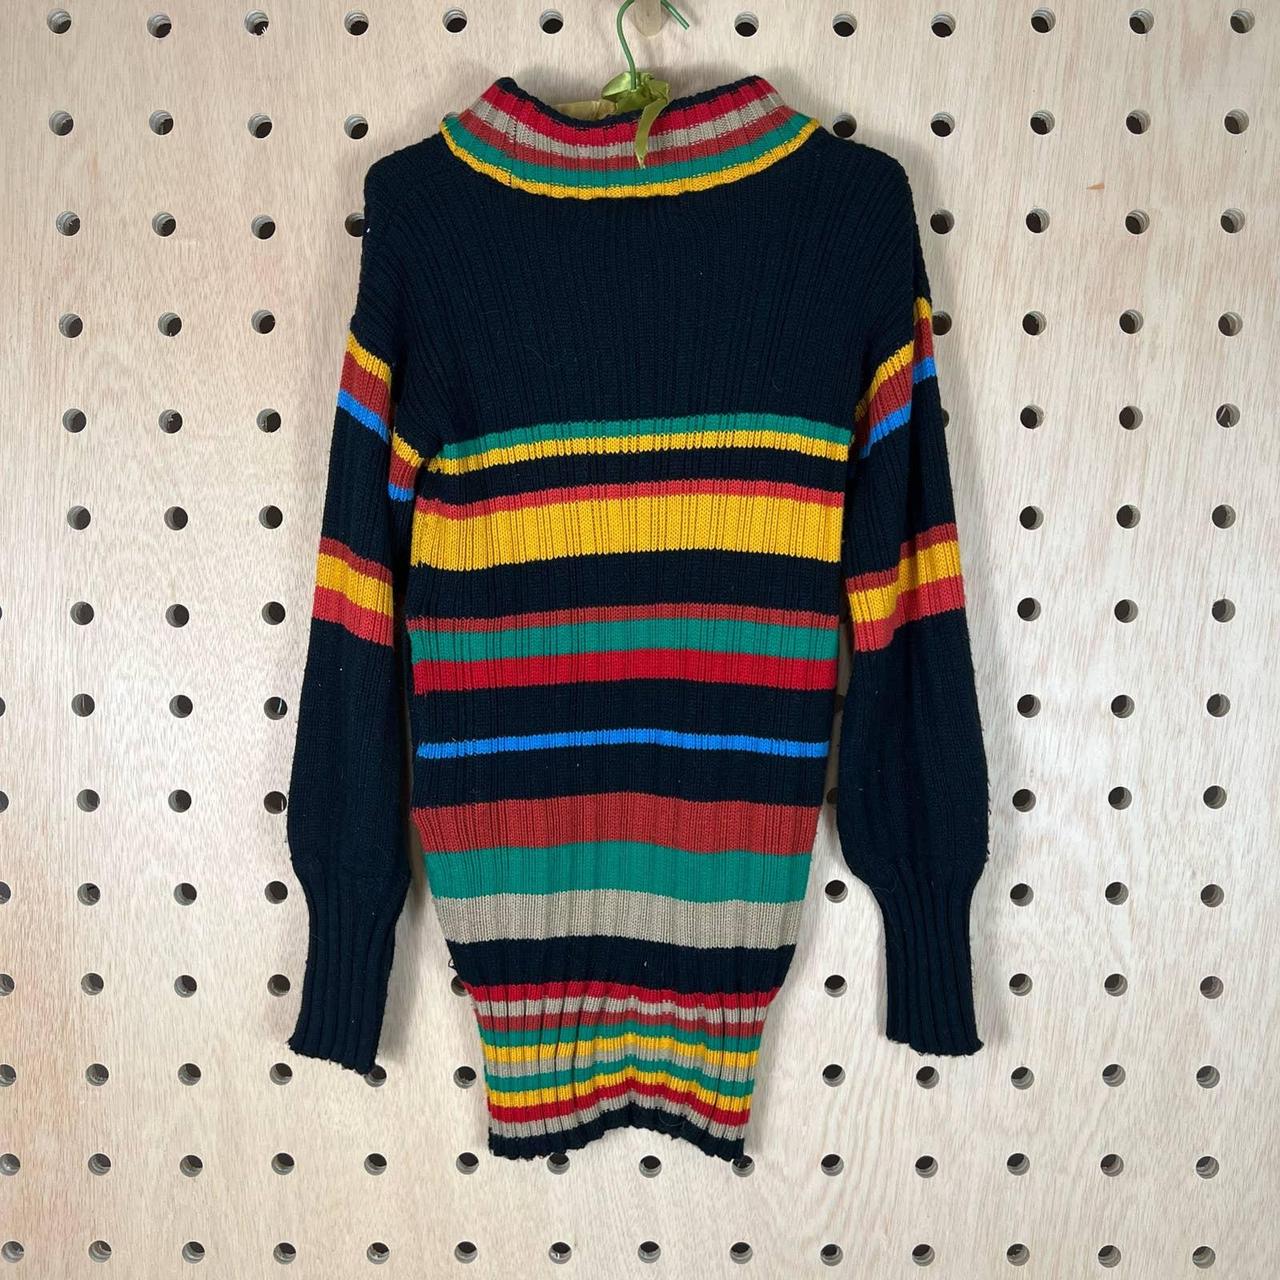 Vintage sears knit 70s sweater Cuffed mock neck top,... - Depop